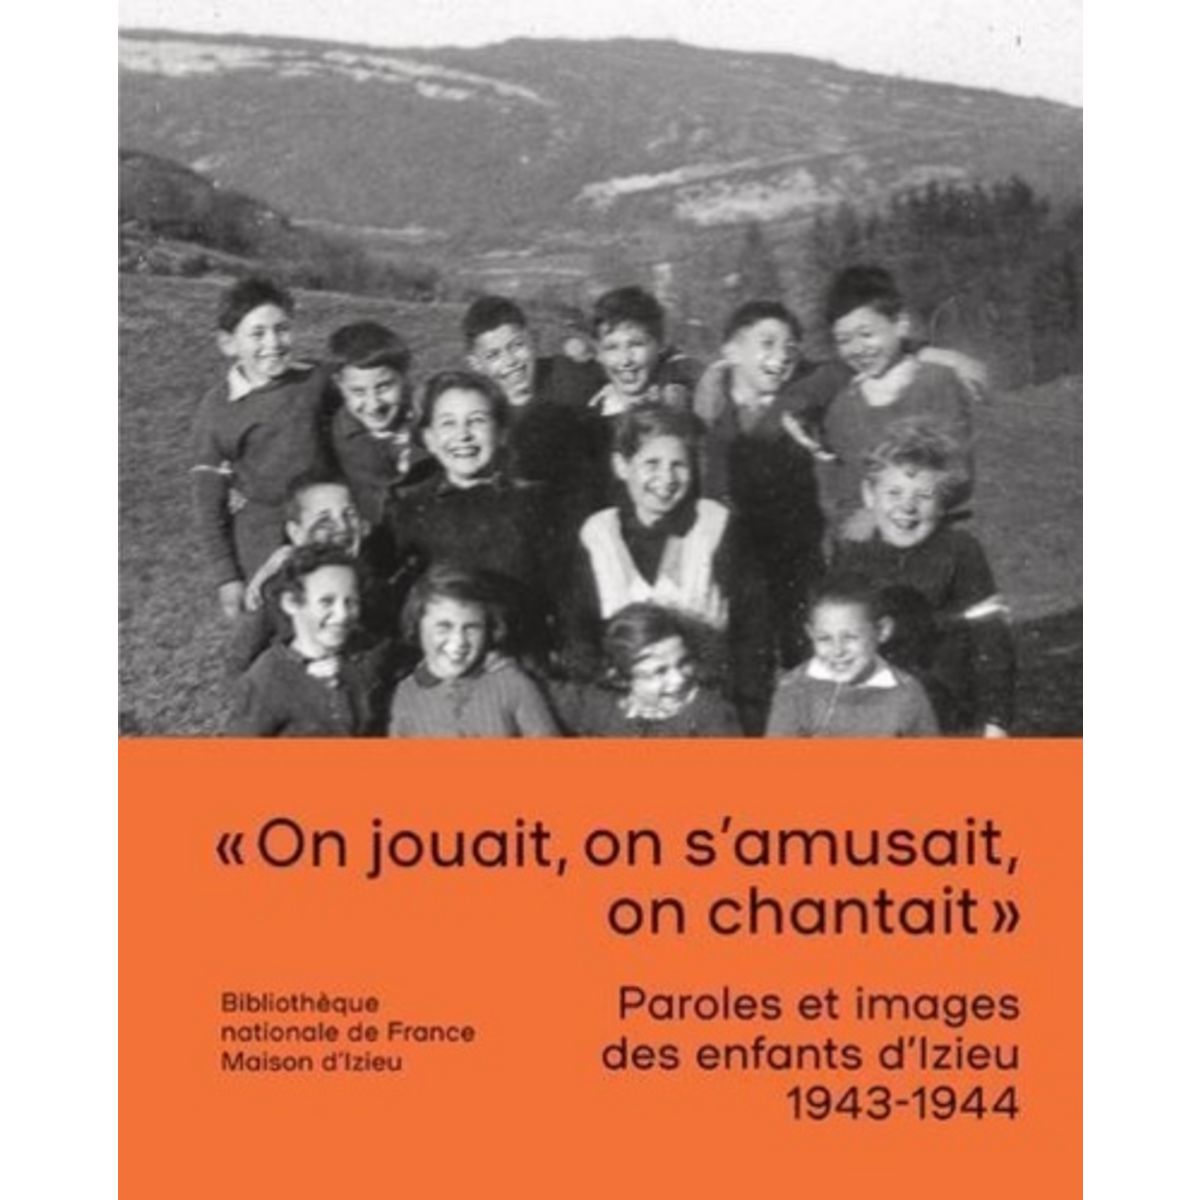  PAROLES ET IMAGES DES ENFANTS D'IZIEU (1943-1944), Boissard Stéphanie